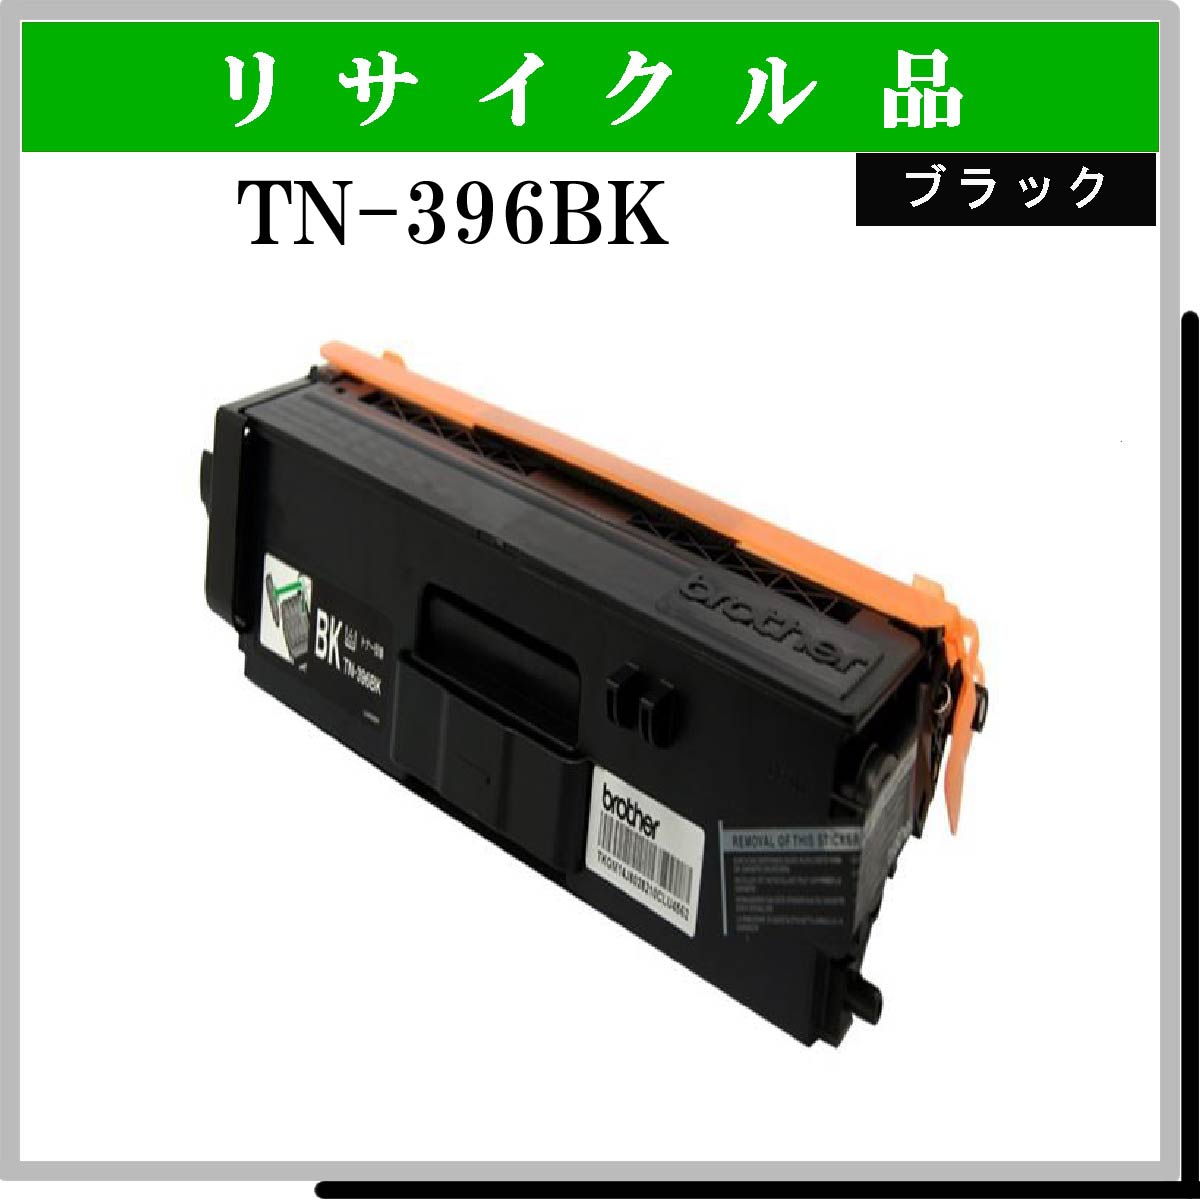 TN-396BK